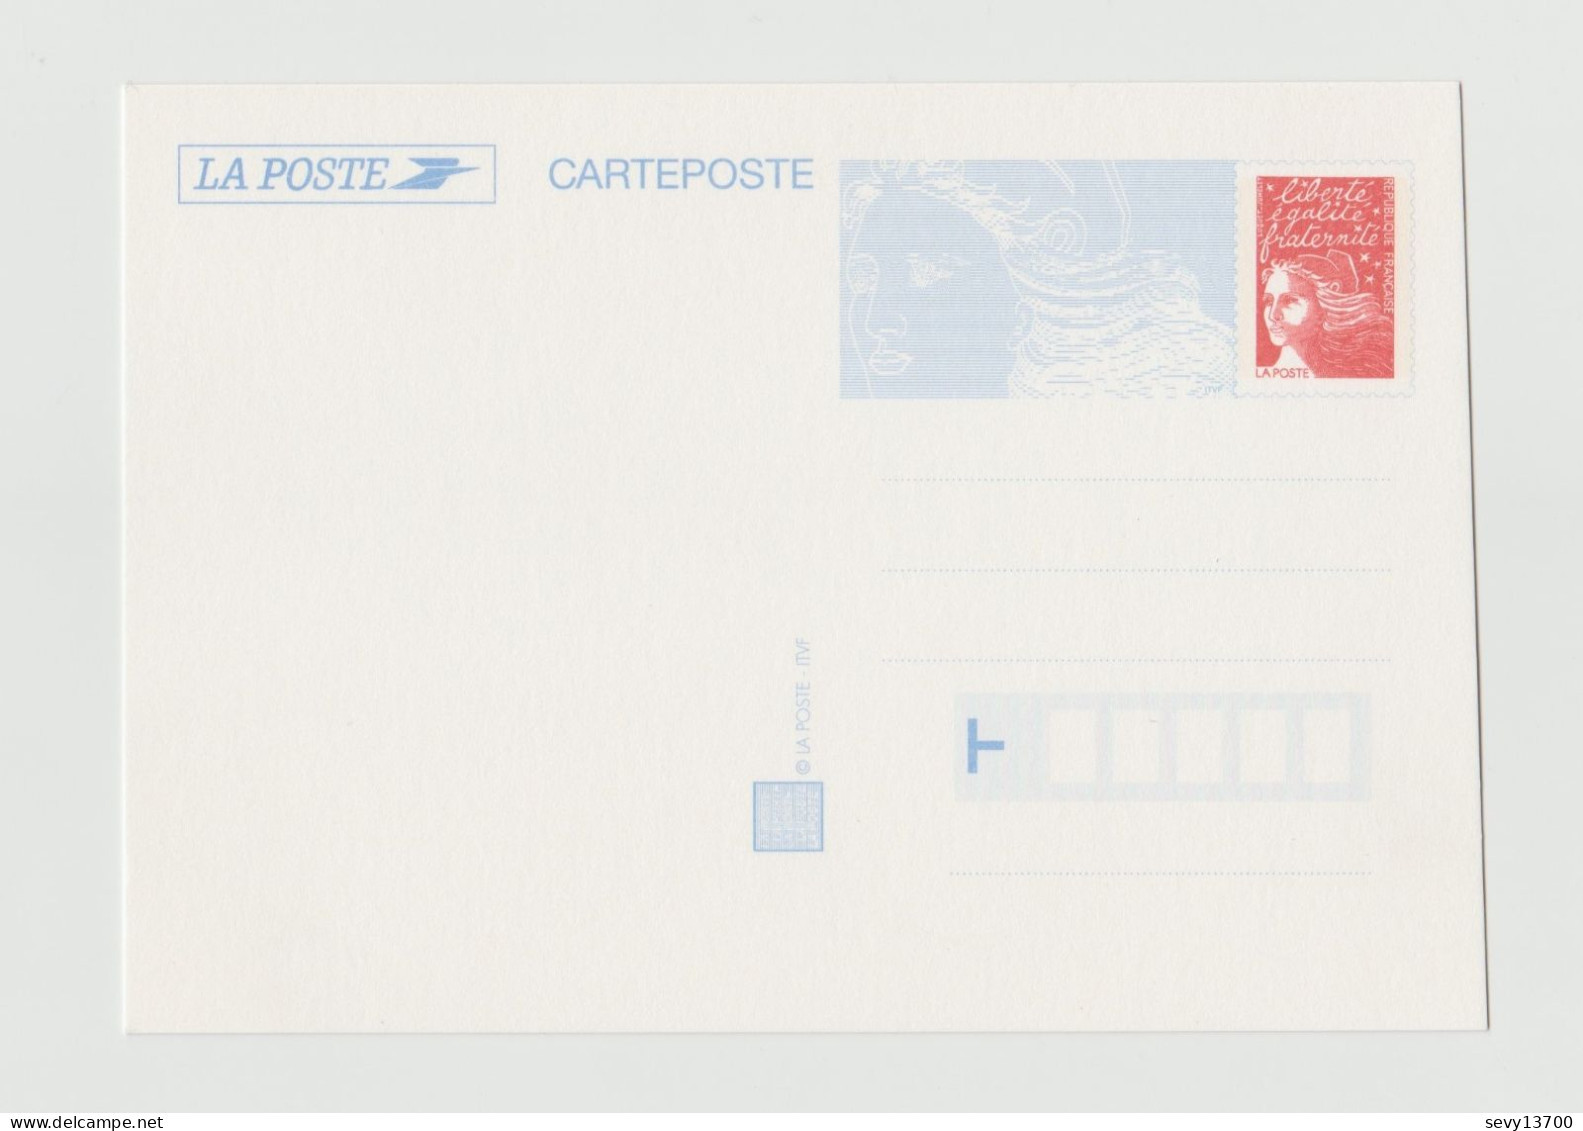 France 1997 La Poste Carteposte  Marianne De Luquet - Letter Cards